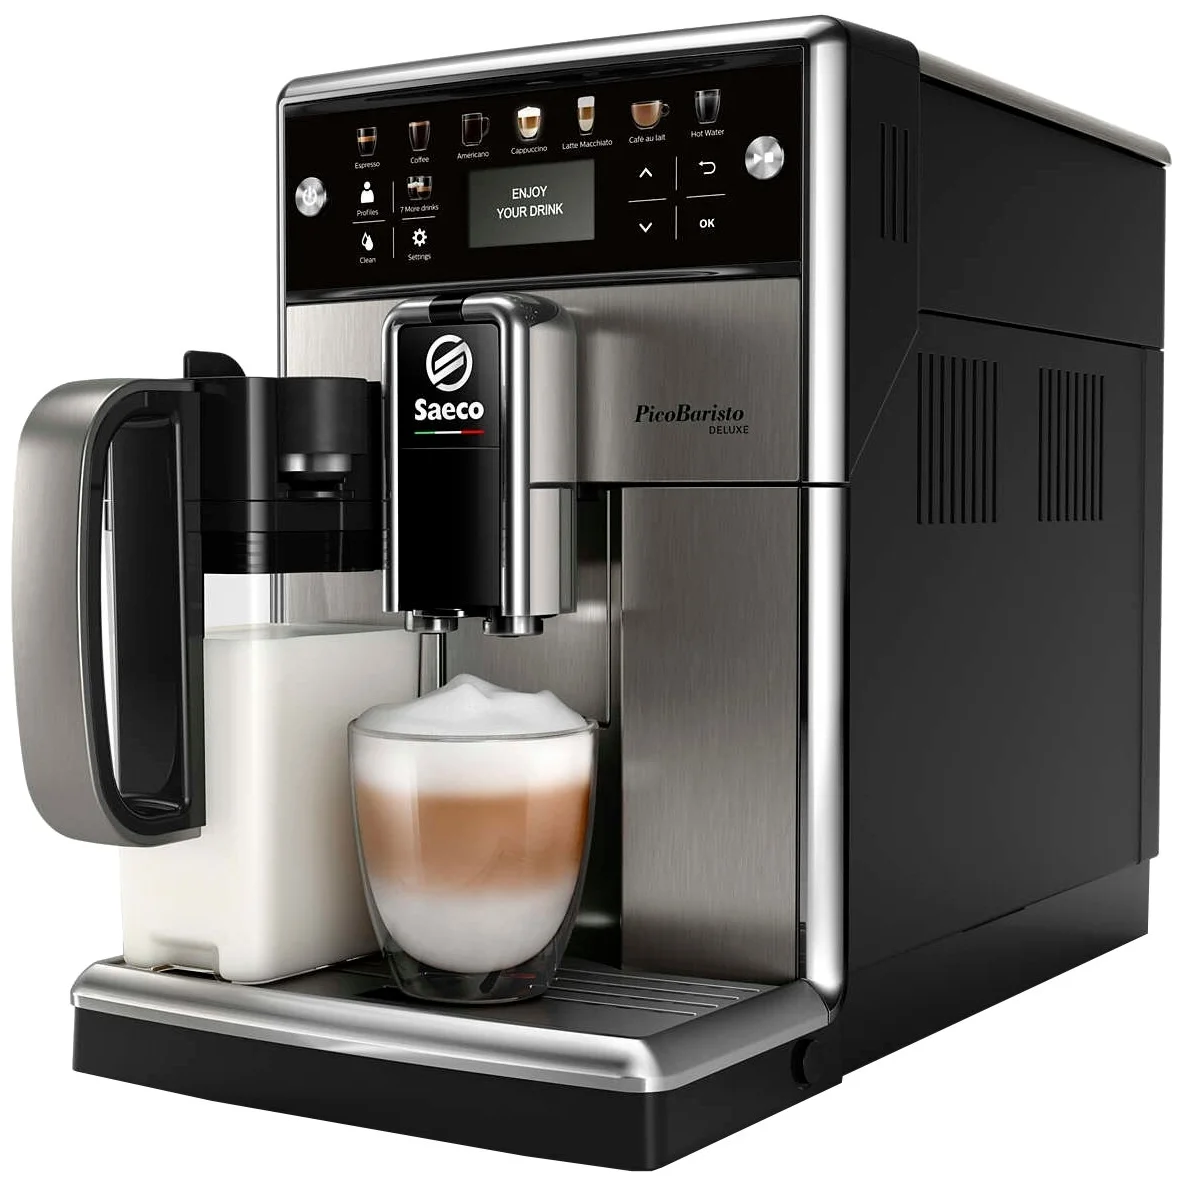 Saeco SM5573 PicoBaristo Deluxe - тип используемого кофе: молотый / зерновой